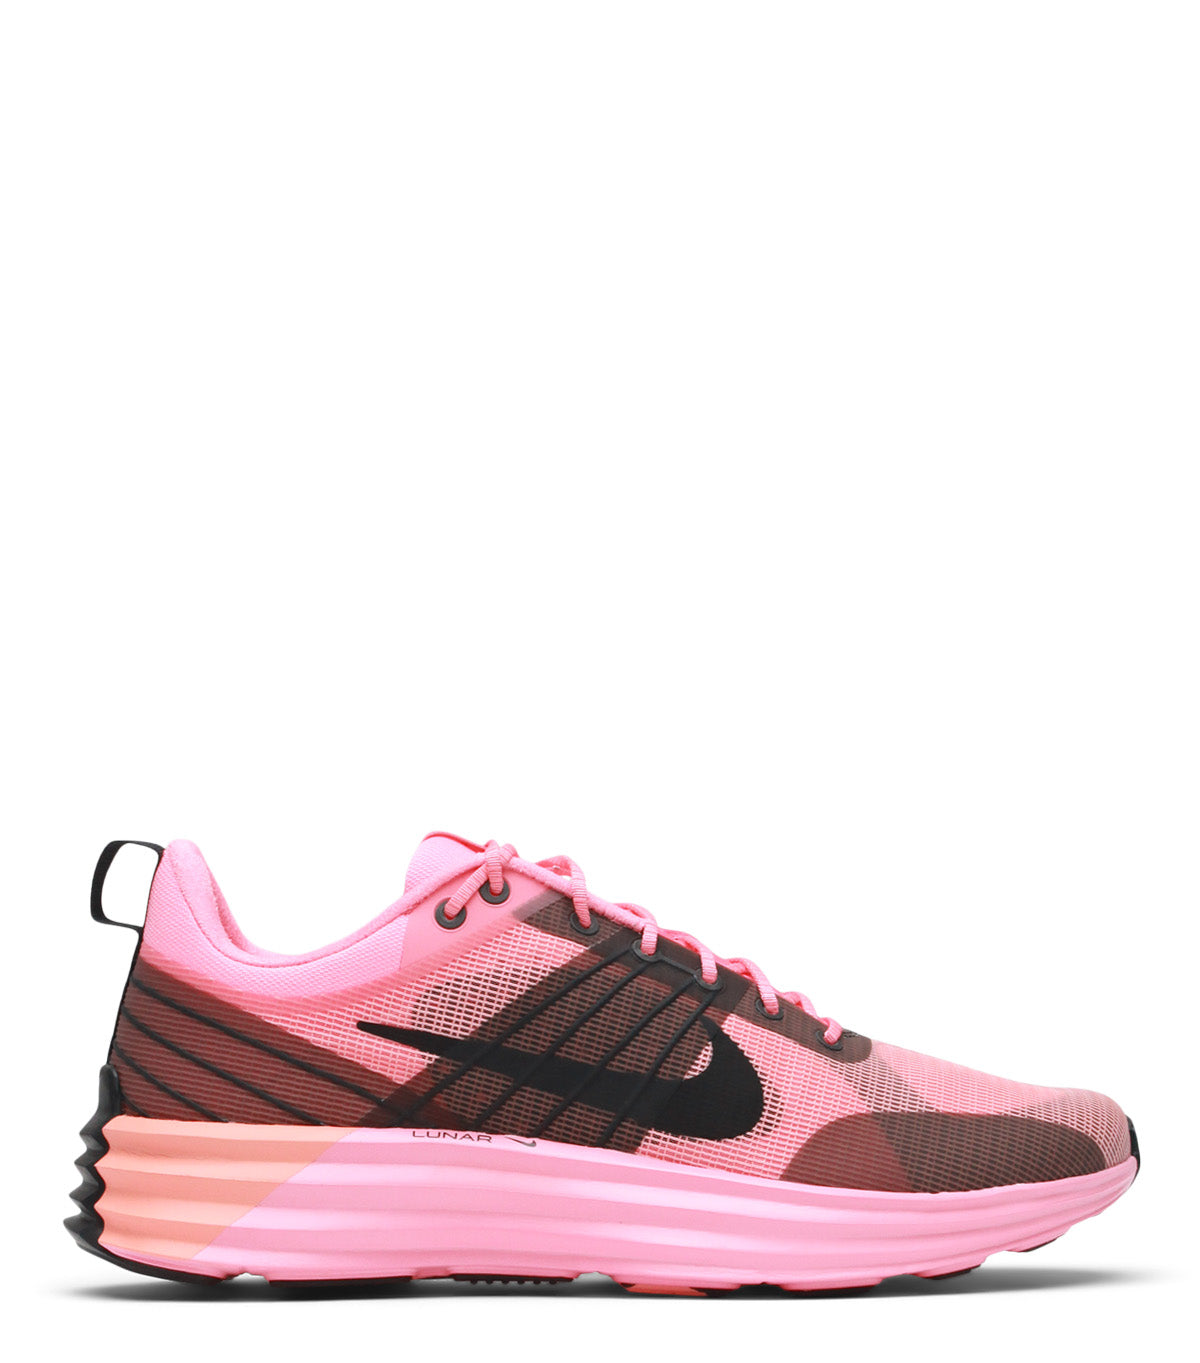 05.15.24 Nike Lunar Roam Premium Pink Black